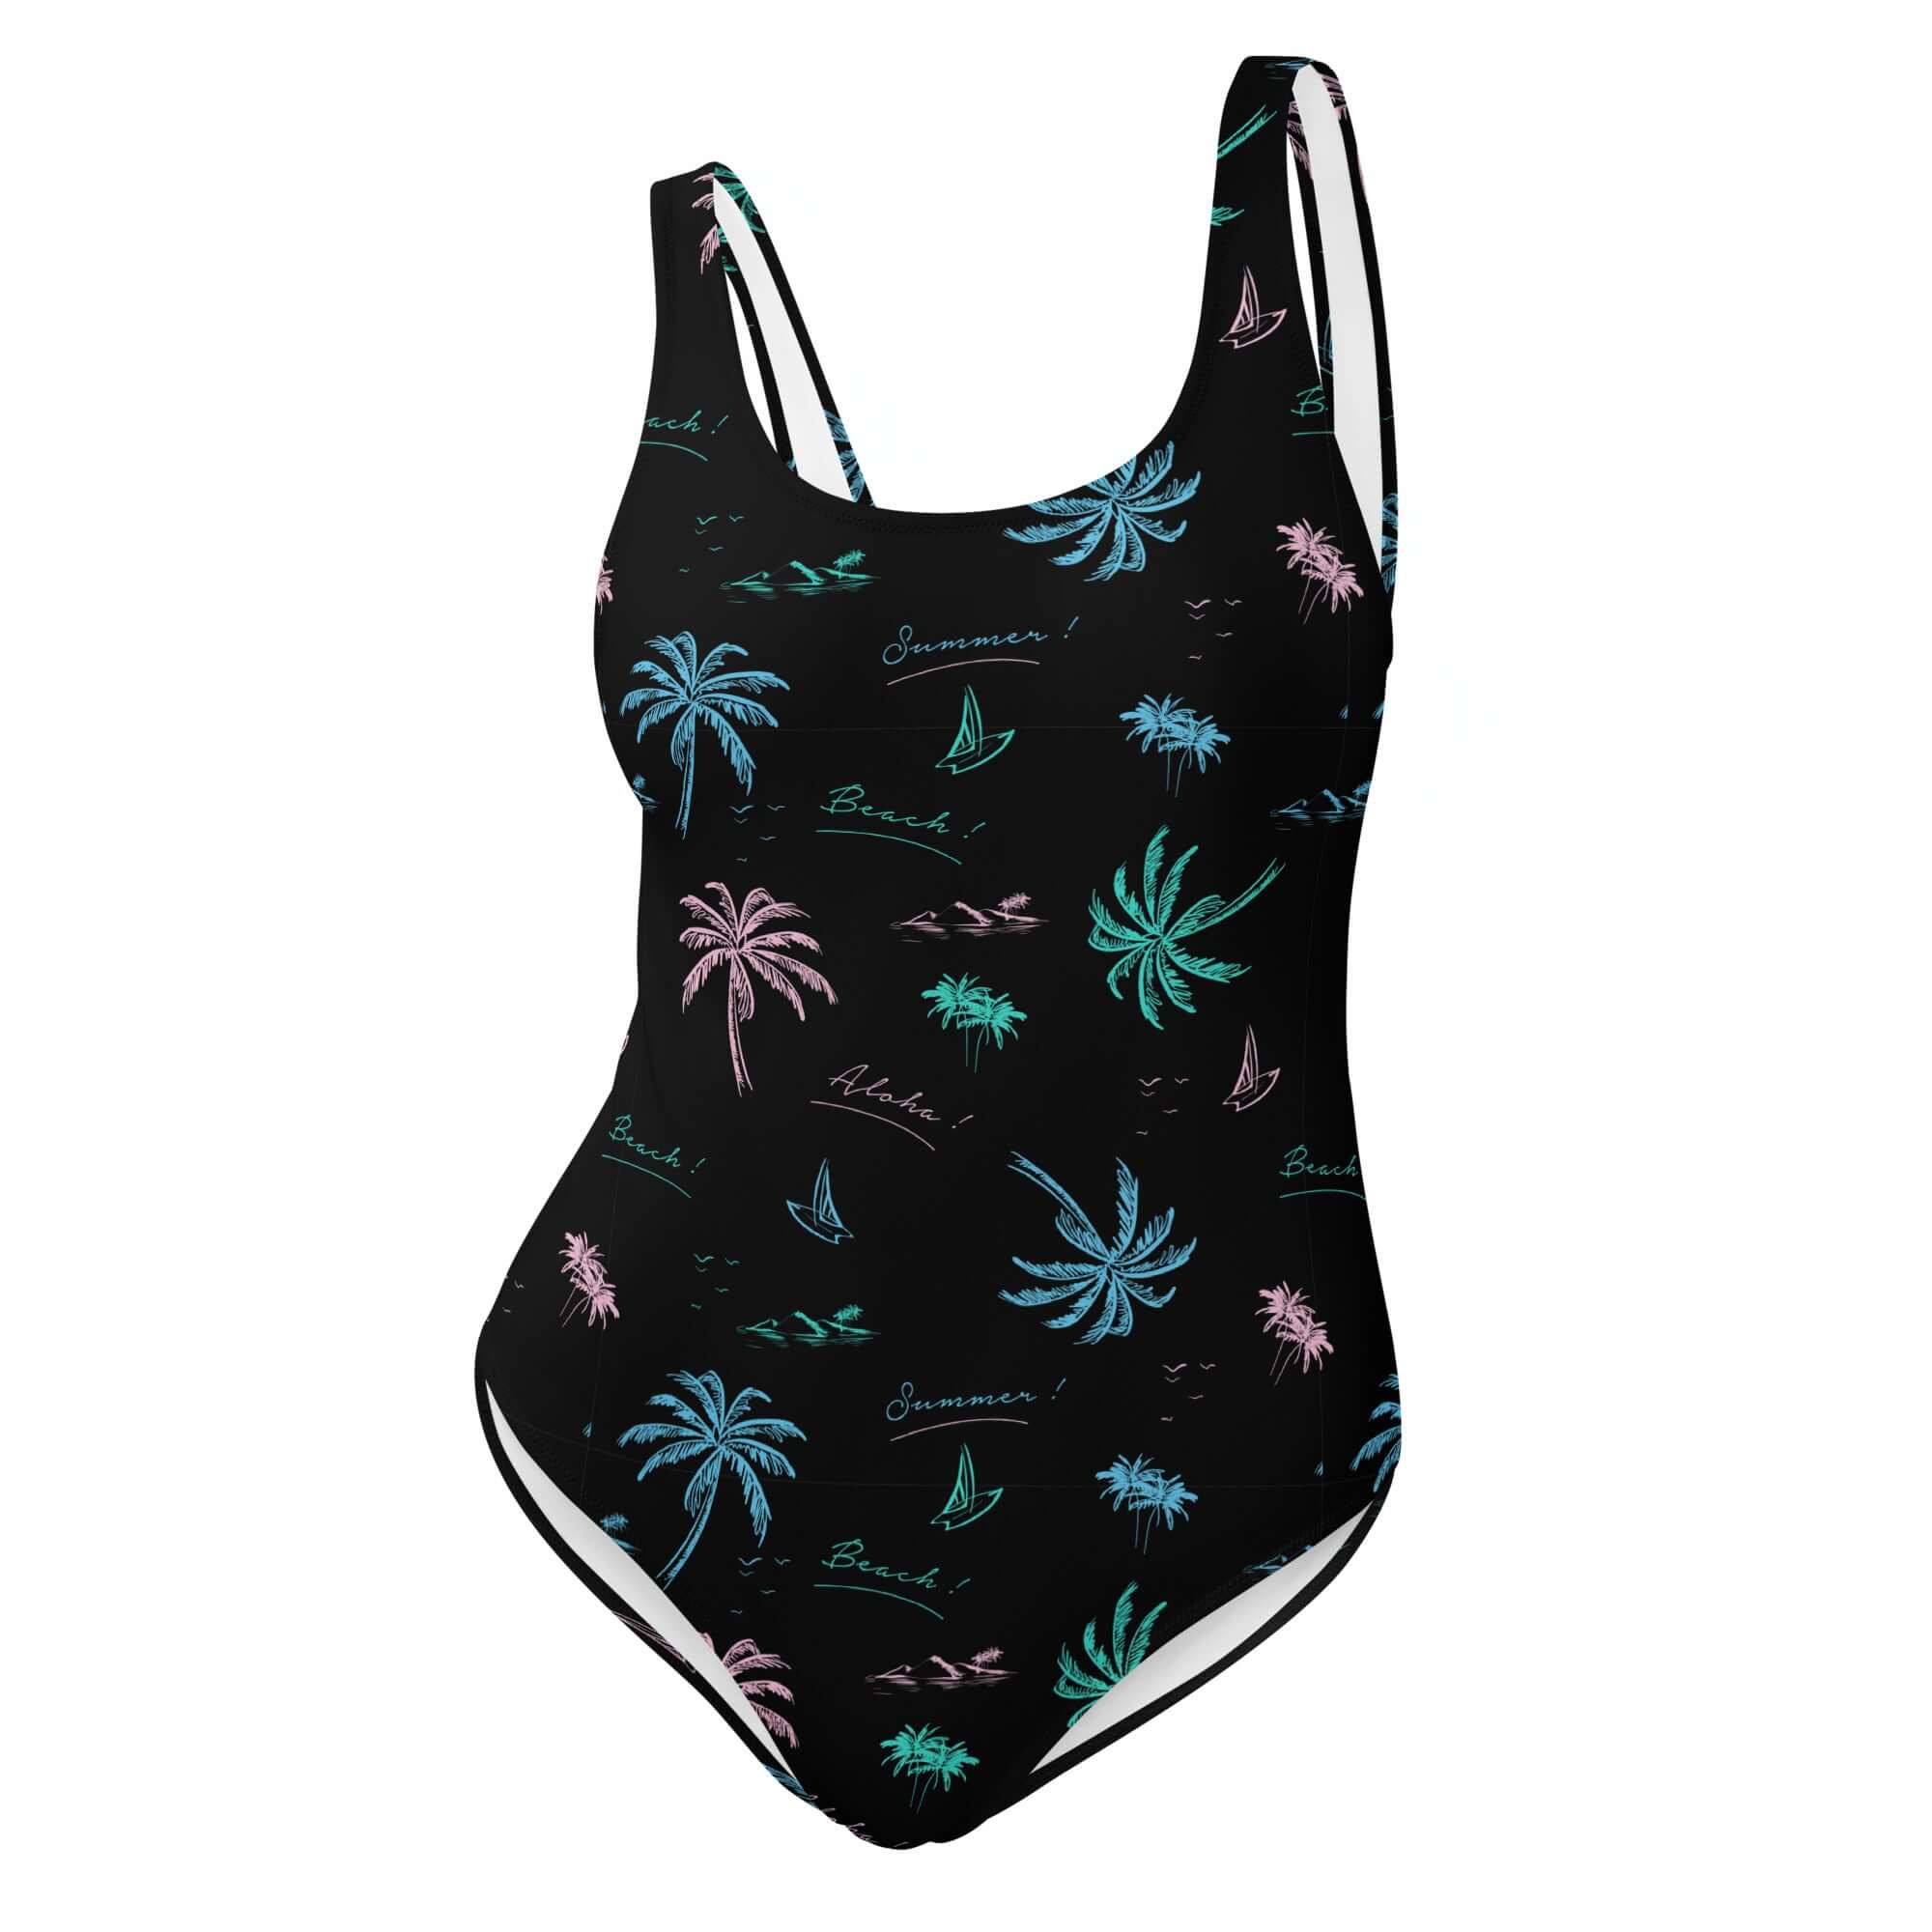 Aloha Hawaii Palm Trees One Piece Swimsuit